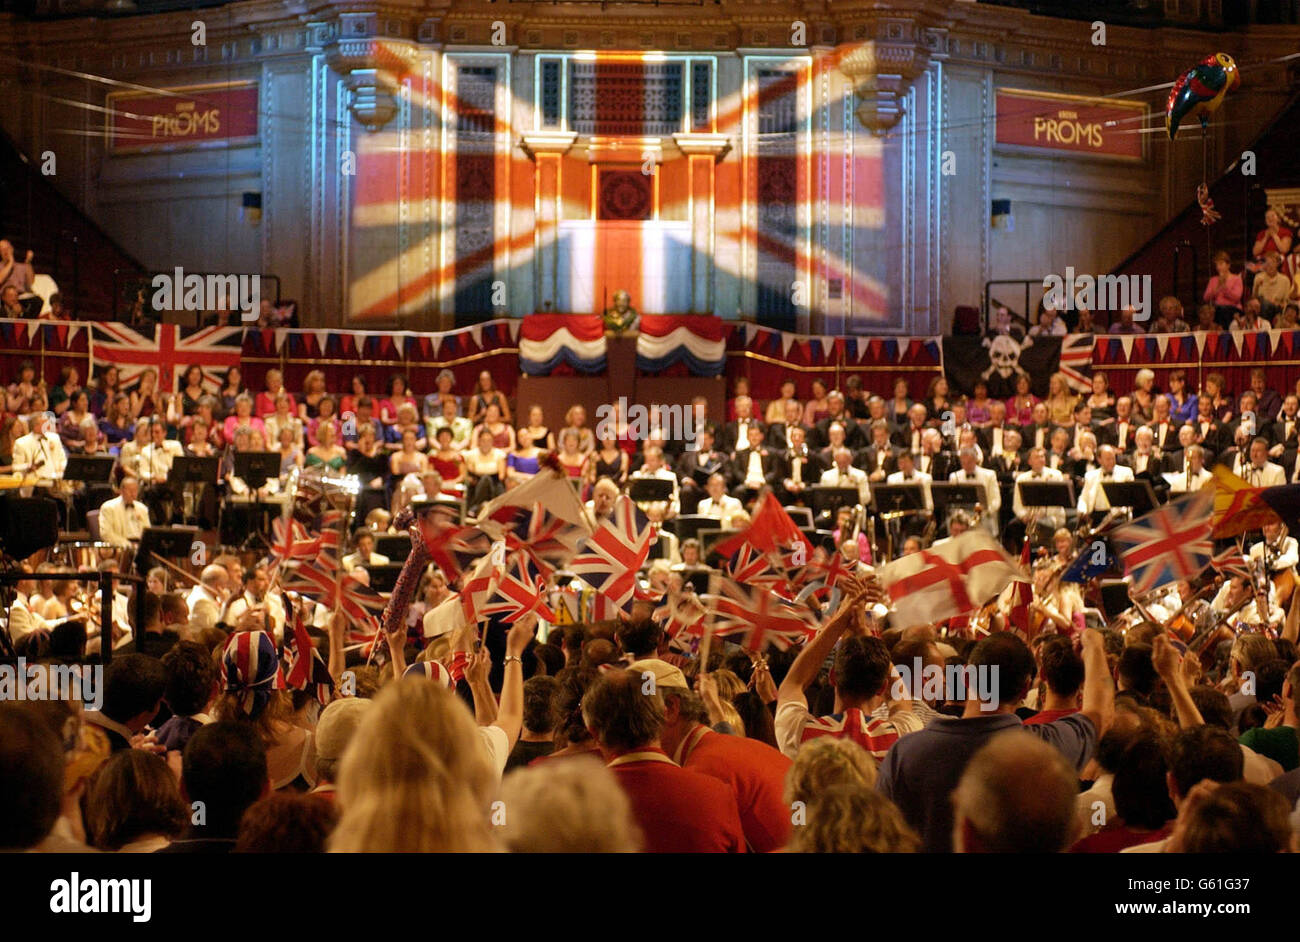 Leonard Slatkin dirige l'orchestre symphonique de la BBC dans une interprétation animée de 'Rule Britannia', à la fin de la dernière nuit des Proms au Royal Albert Hall, Londres. Banque D'Images